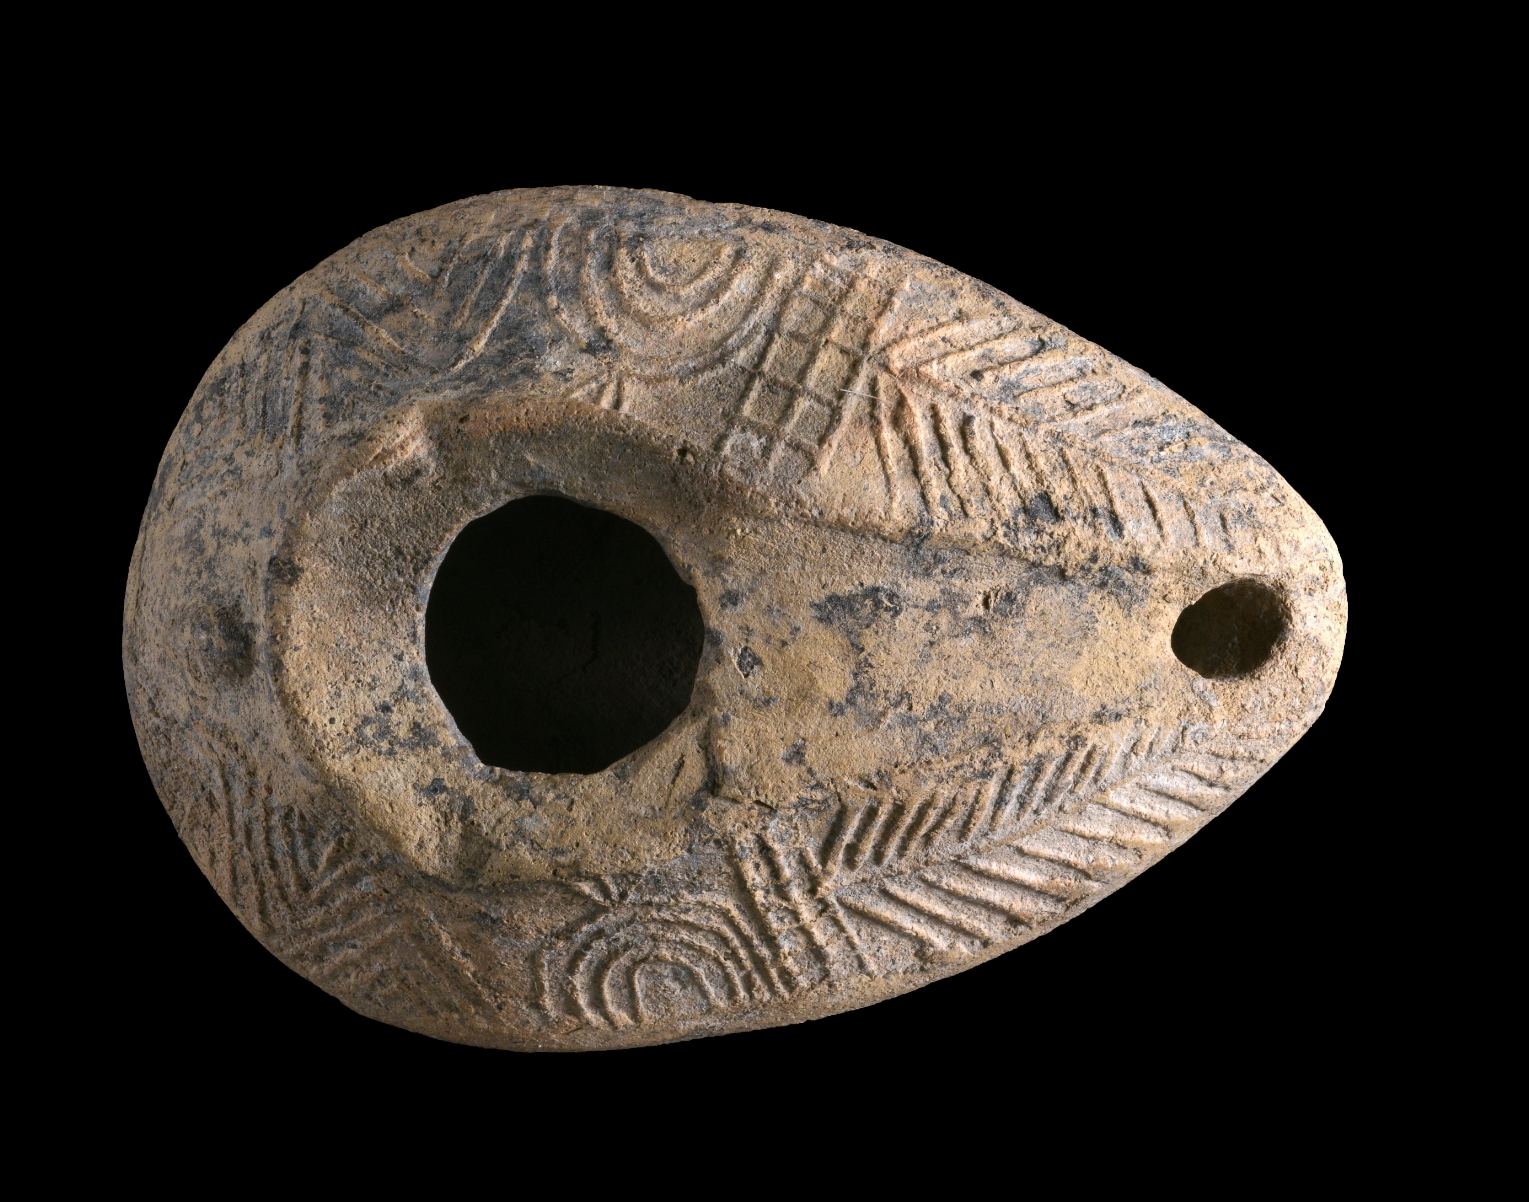 נר עם עיטור מנורה מאושה (צילום: קלרה עמית, רשות העתיקות)